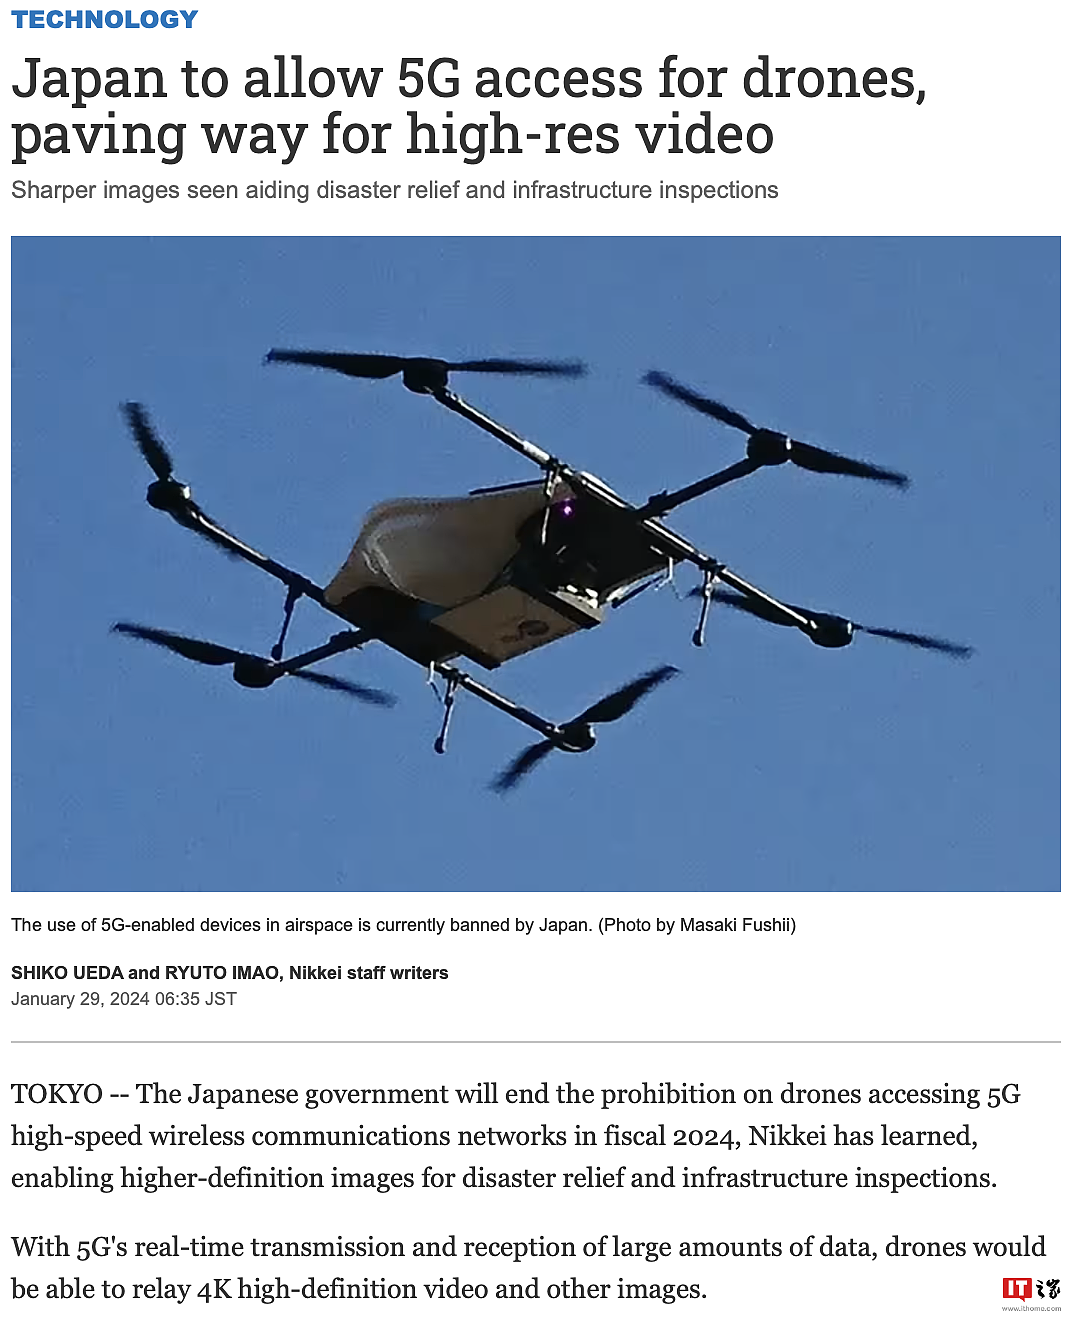 为基建救灾提供 4K 串流支持，日本宣布年内开放无人机蜂窝 5G 图传通信 - 1